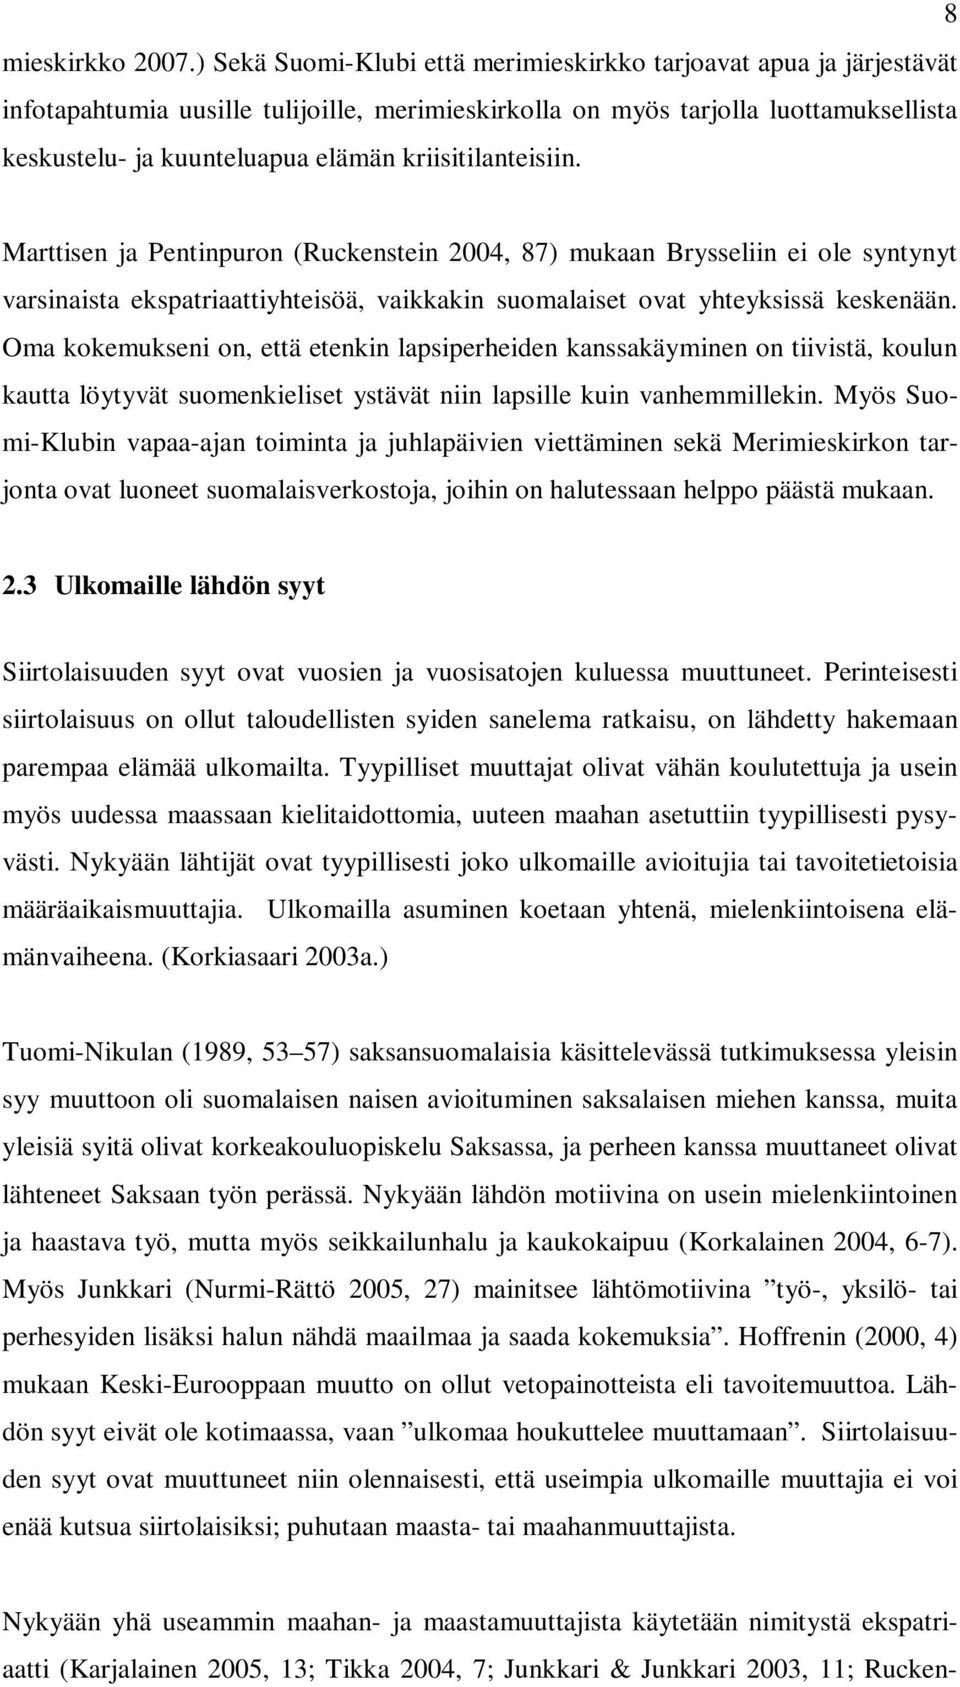 kriisitilanteisiin. Marttisen ja Pentinpuron (Ruckenstein 2004, 87) mukaan Brysseliin ei ole syntynyt varsinaista ekspatriaattiyhteisöä, vaikkakin suomalaiset ovat yhteyksissä keskenään.